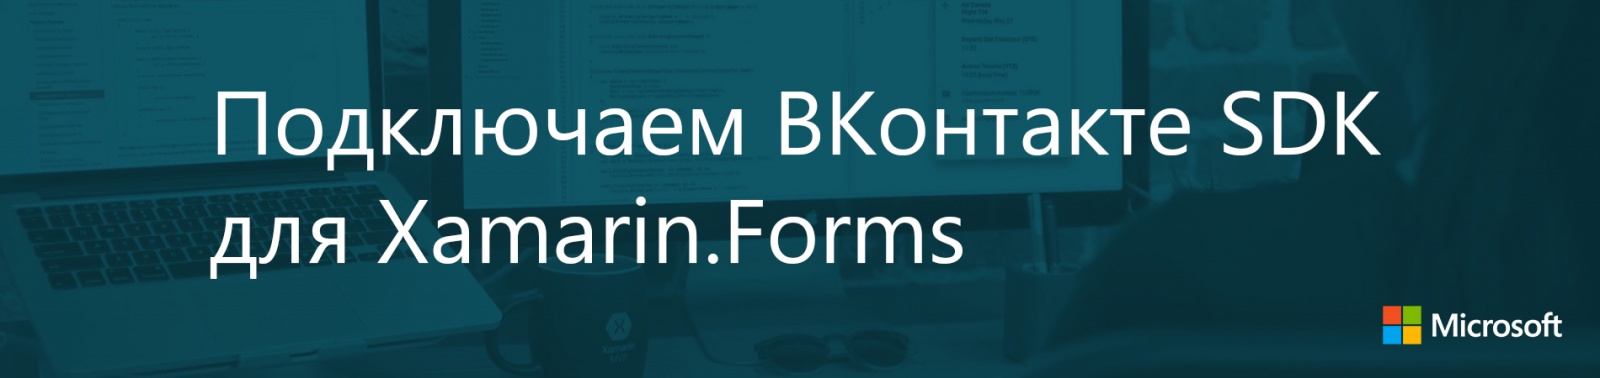 Подключаем ВКонтакте SDK для Xamarin.Forms - 1